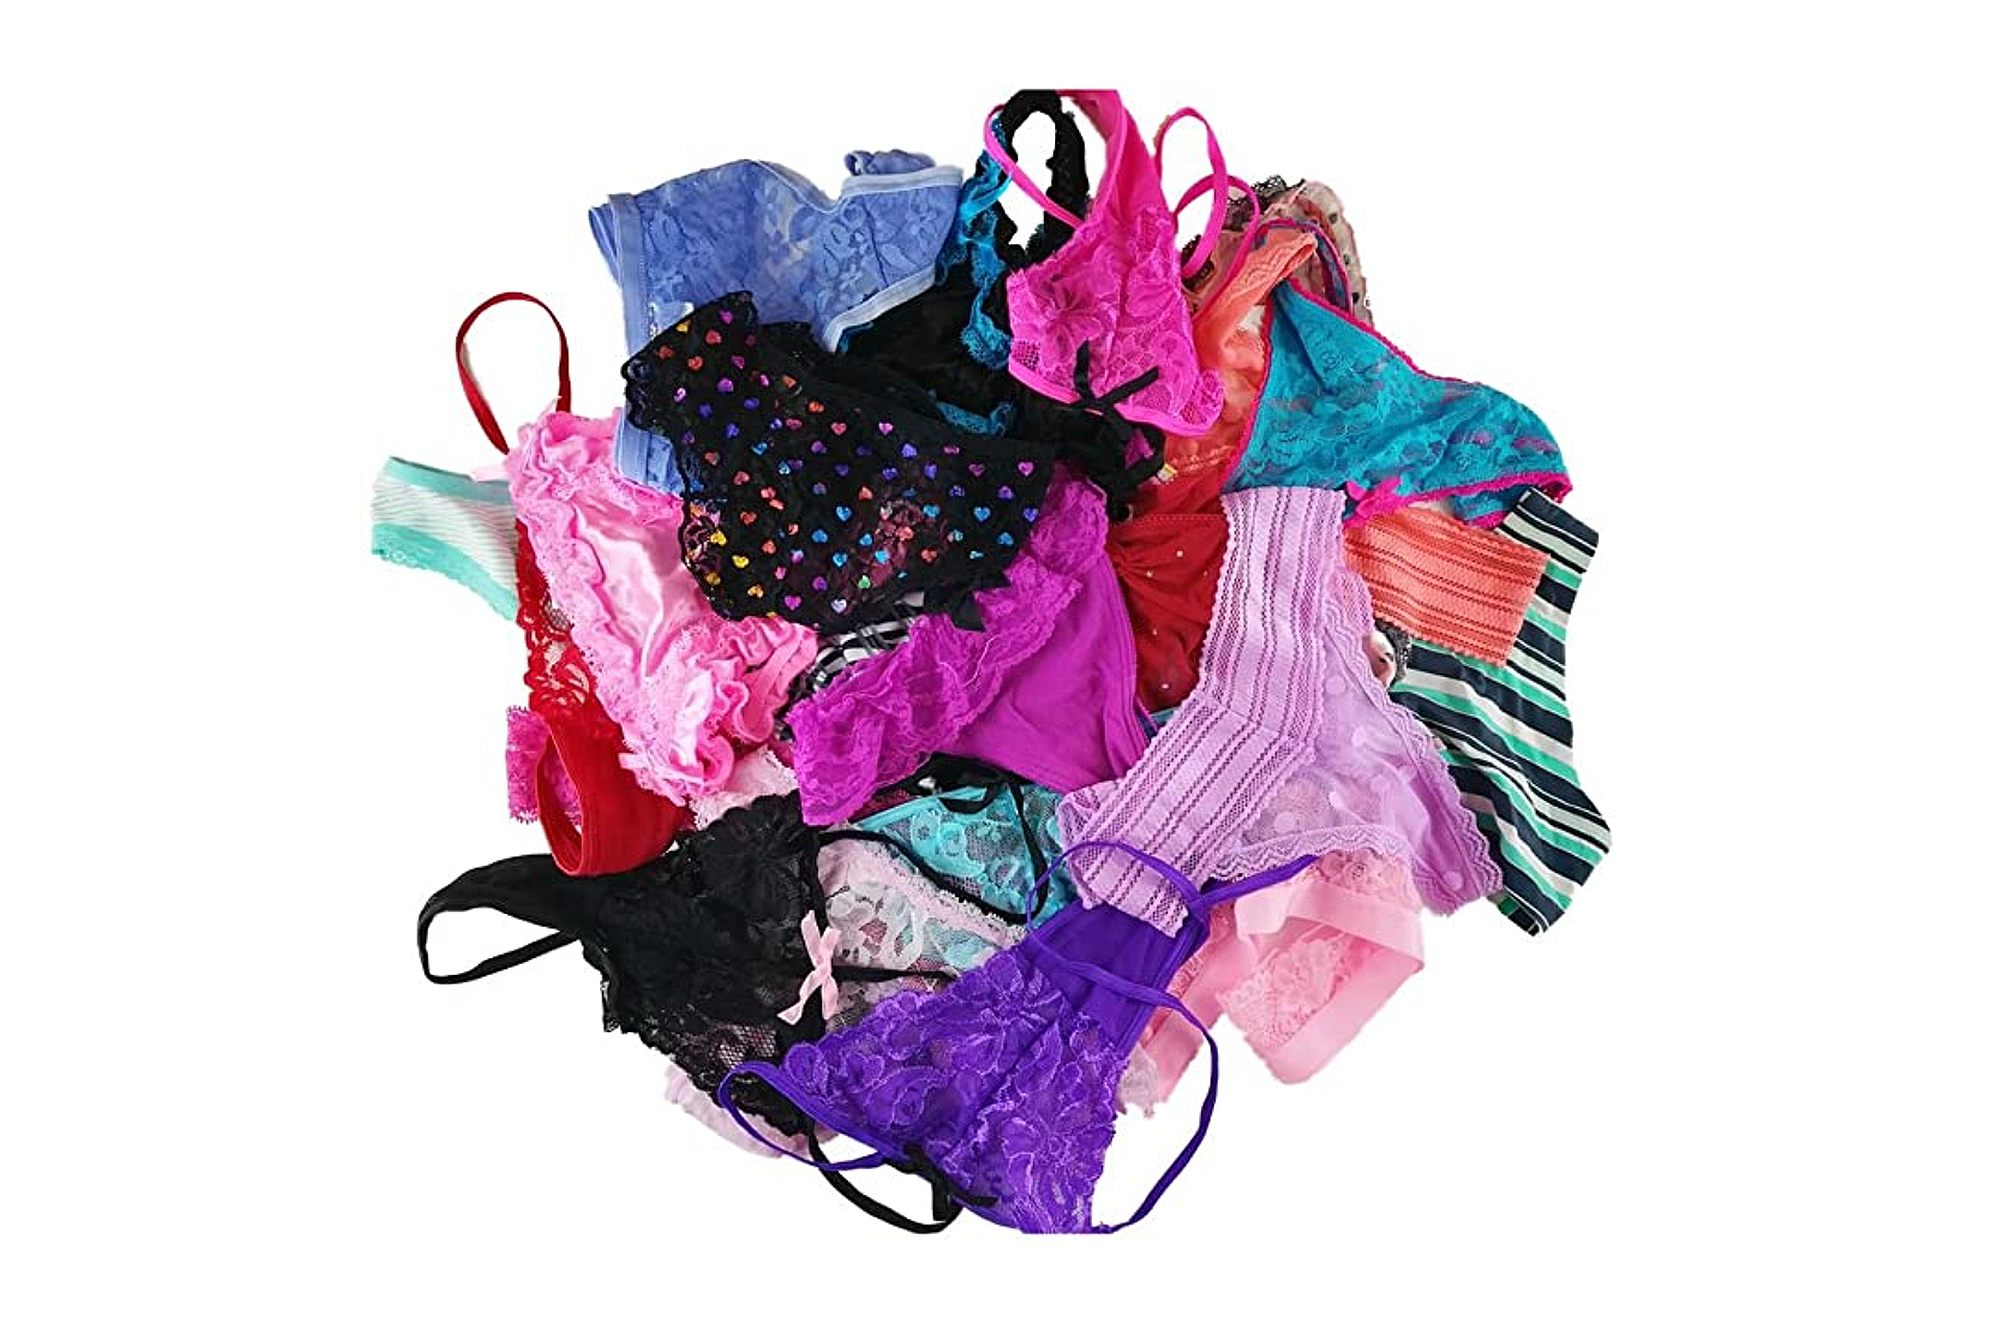 Jooniyaa Women Variety Of Underwear Pack T-Back Thong G-String Panties10pcs